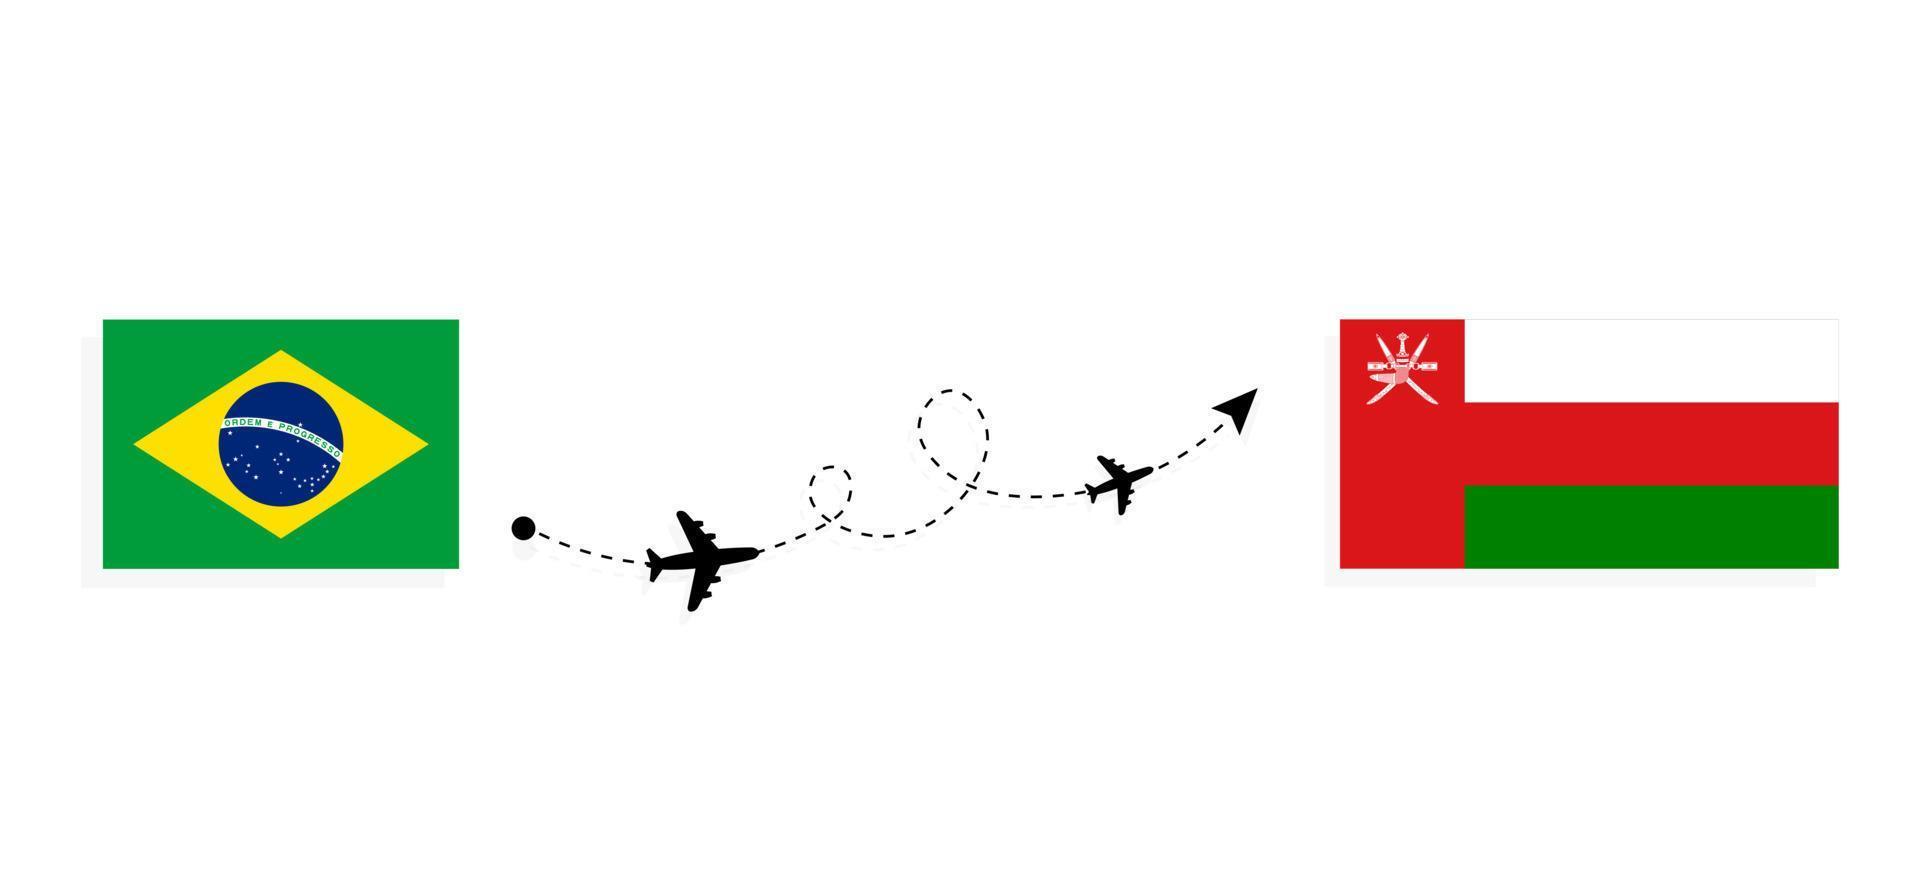 flyg och resor från Brasilien till Oman med passagerarflygplan vektor